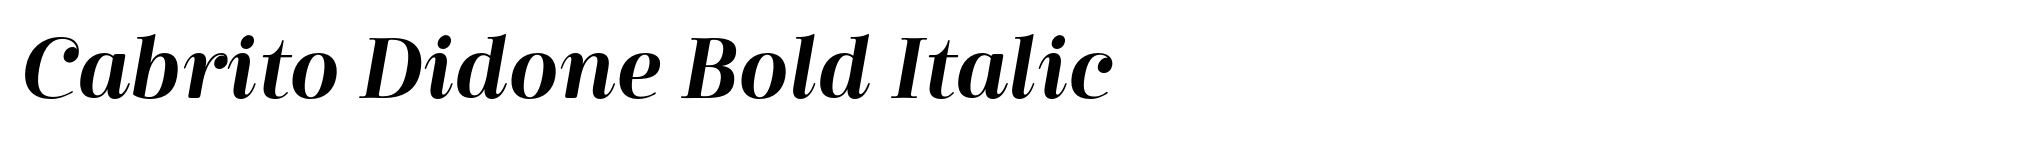 Cabrito Didone Bold Italic image